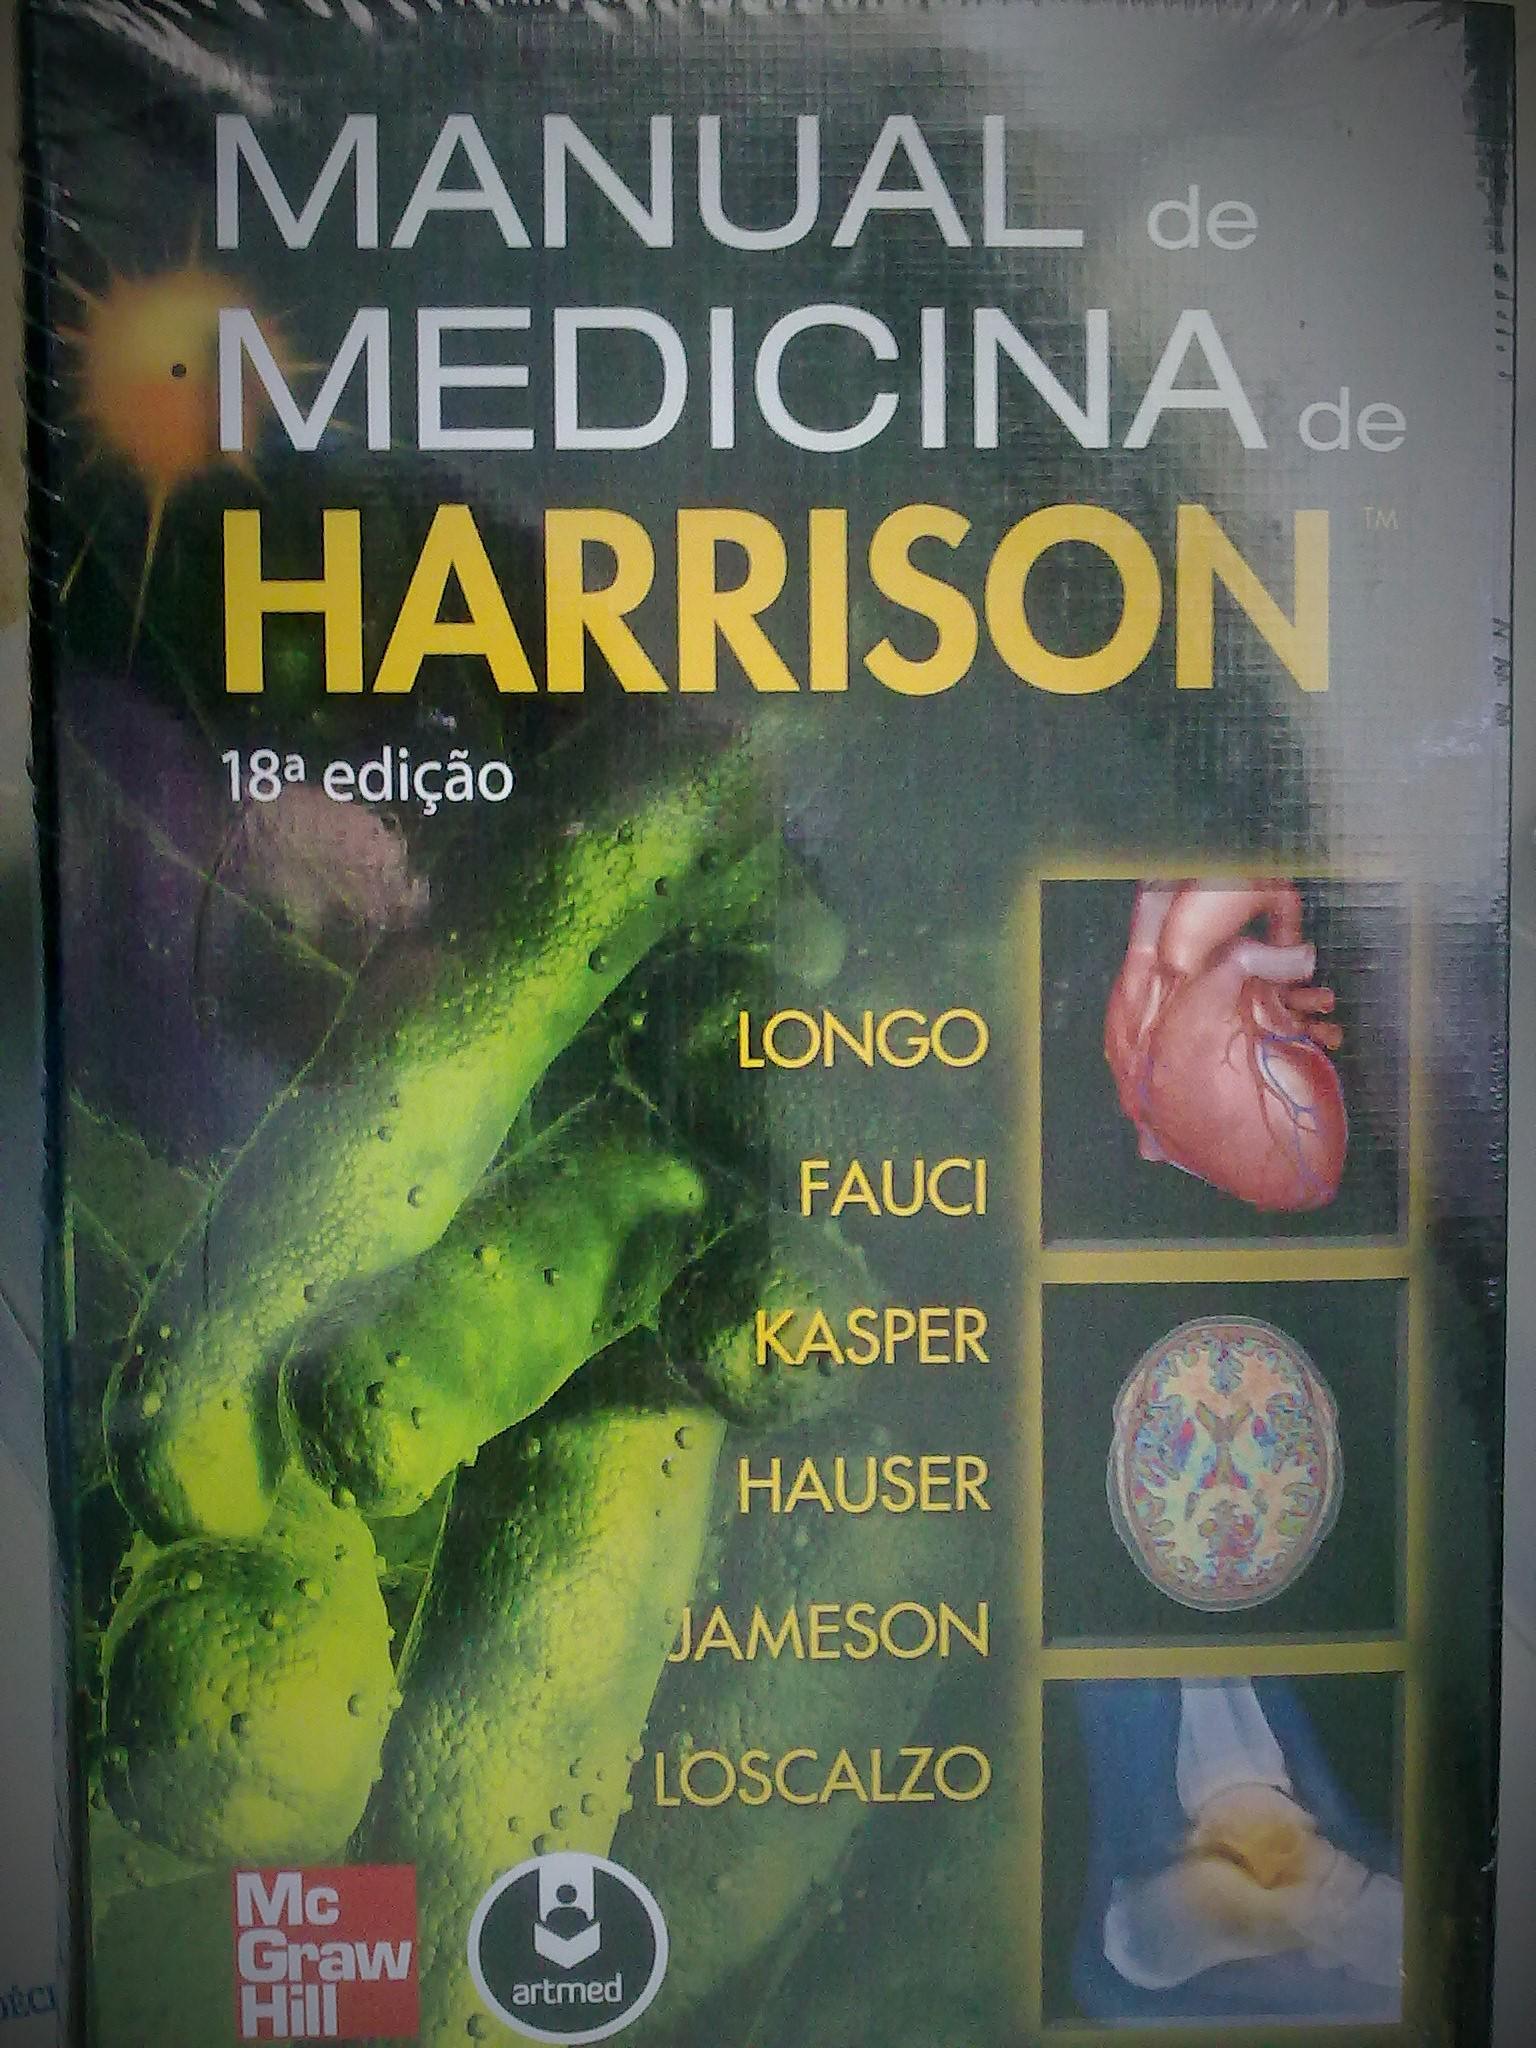 Manual de Medicina de HARRISON 18ªed.